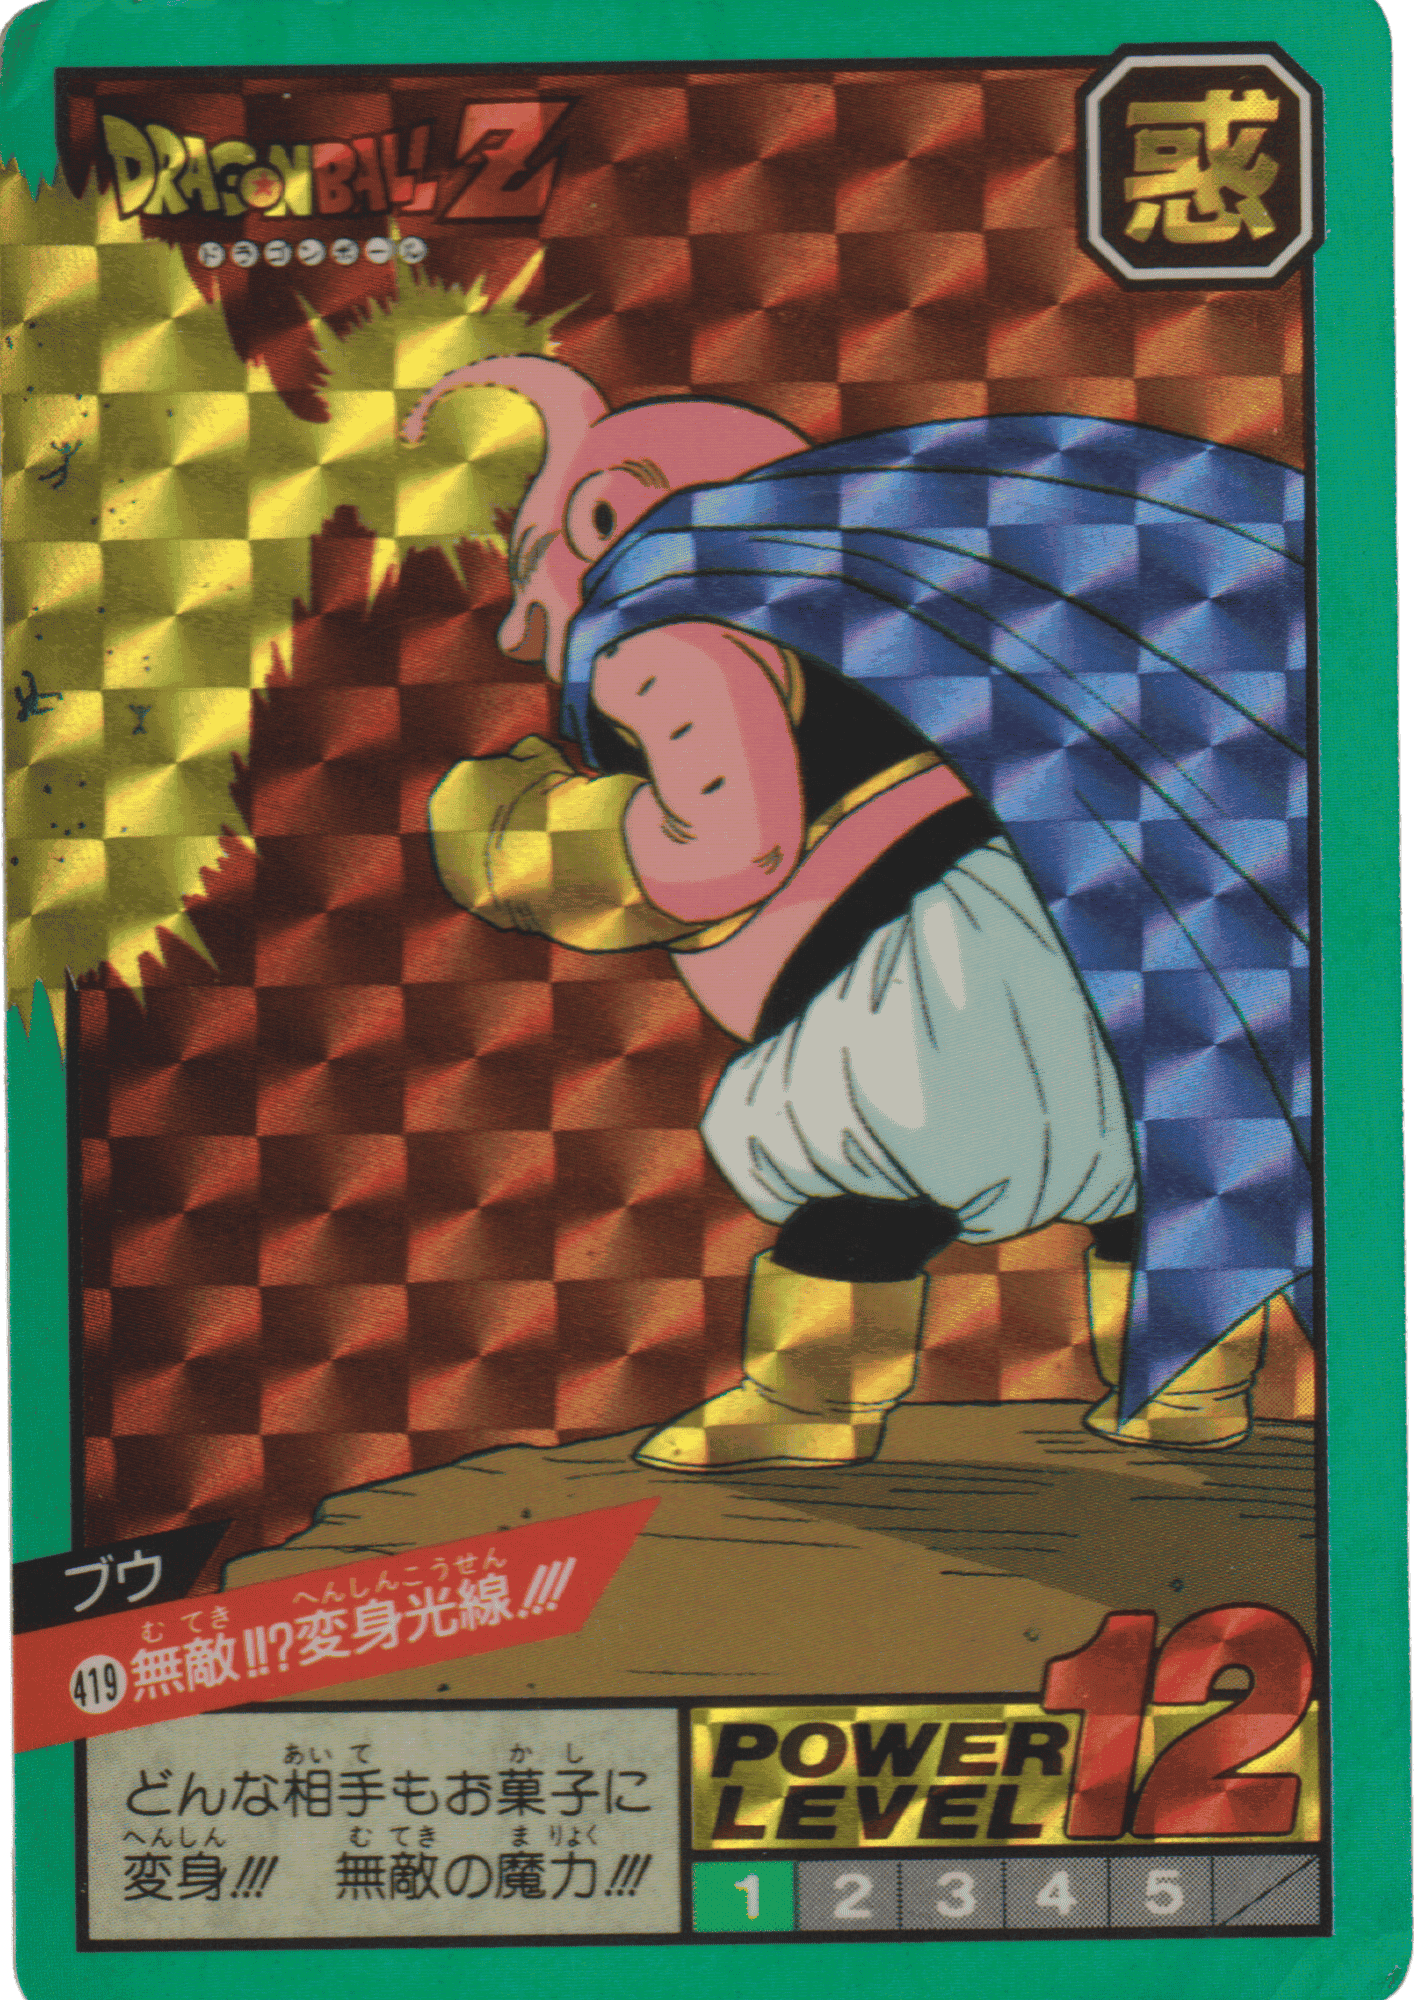 Buu Nr. 419 | Carddass Super Battle ChitoroShop